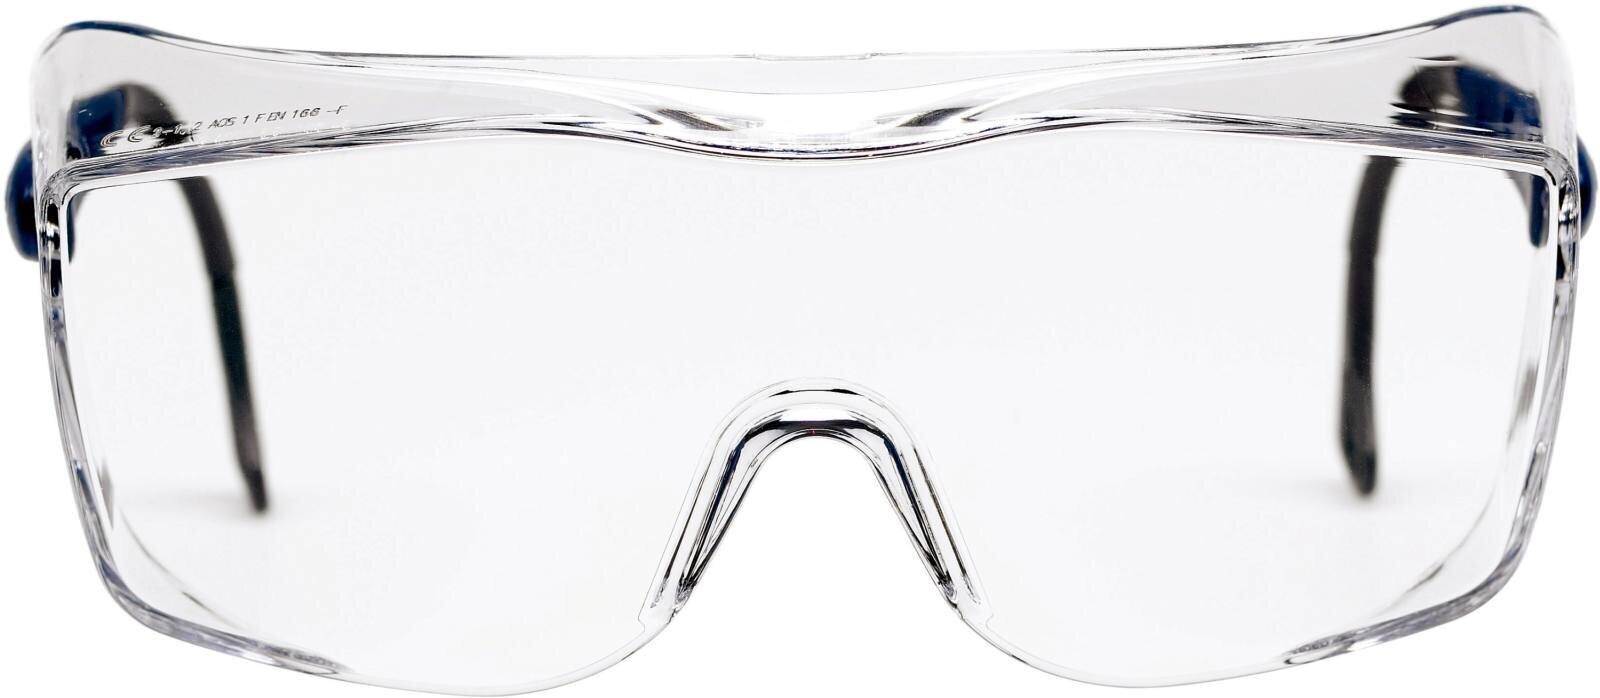 3M OX2000 goggles, anti-scratch/anti-fog coating, clear lens, 17-5118-2040